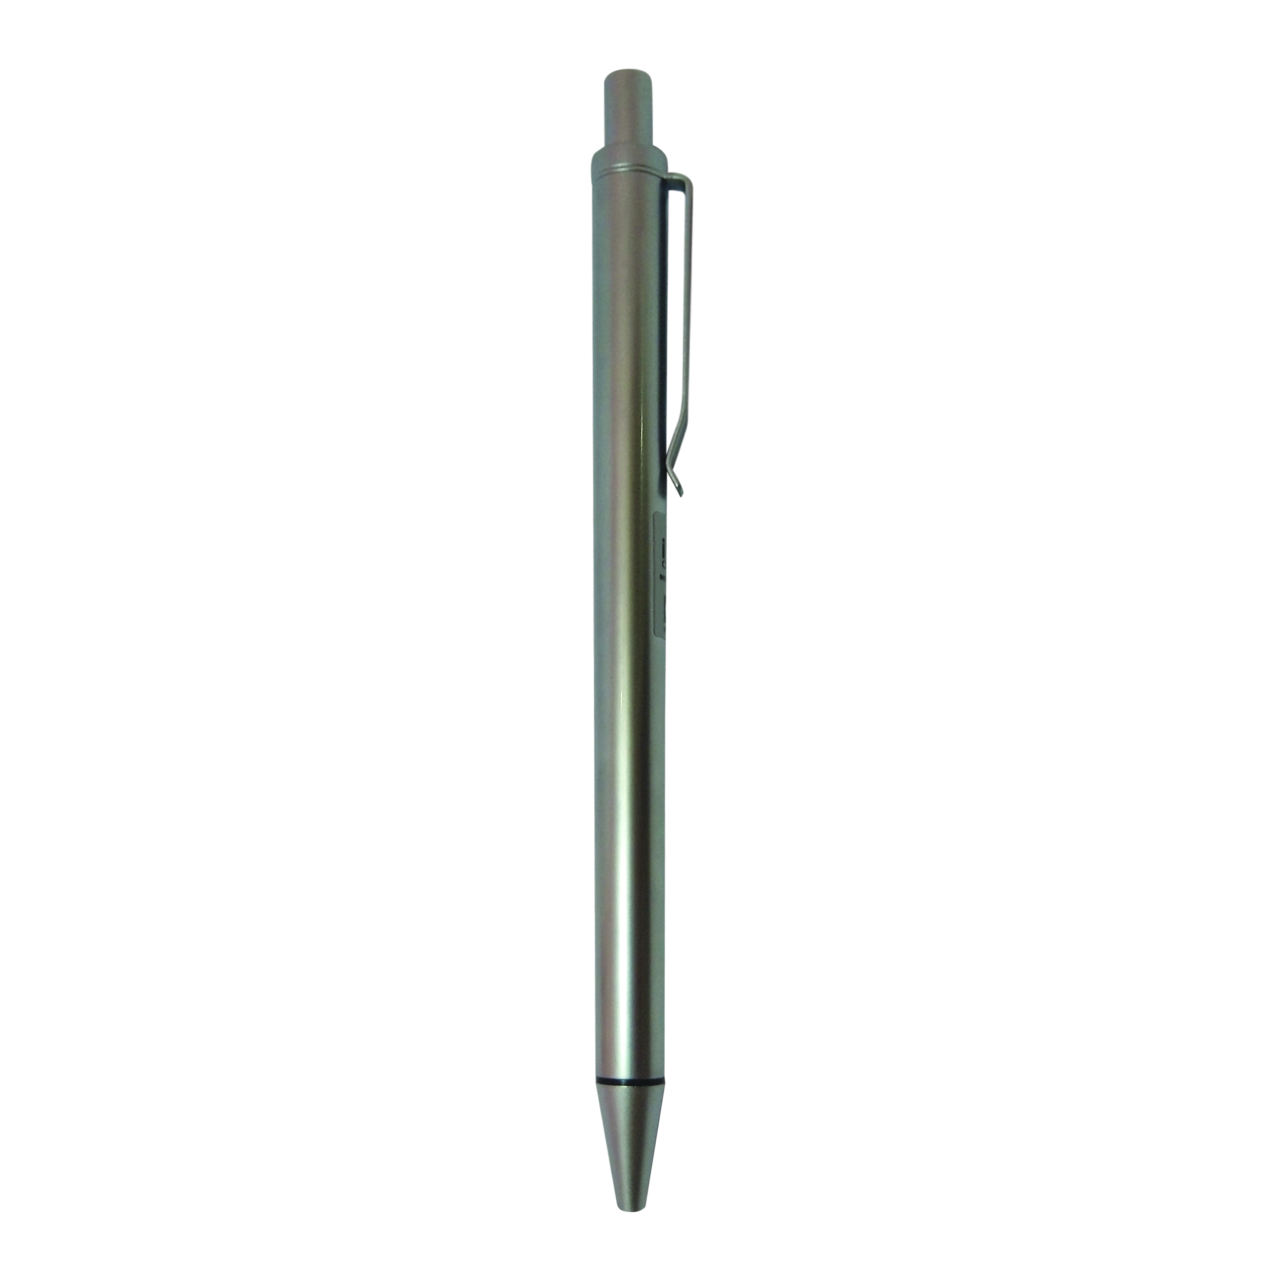 مداد نوکی -اتود و نوک -نوشت افزار - مداد نوکی 0.5 میلی متری پنتر مدل Iron Charm Metal